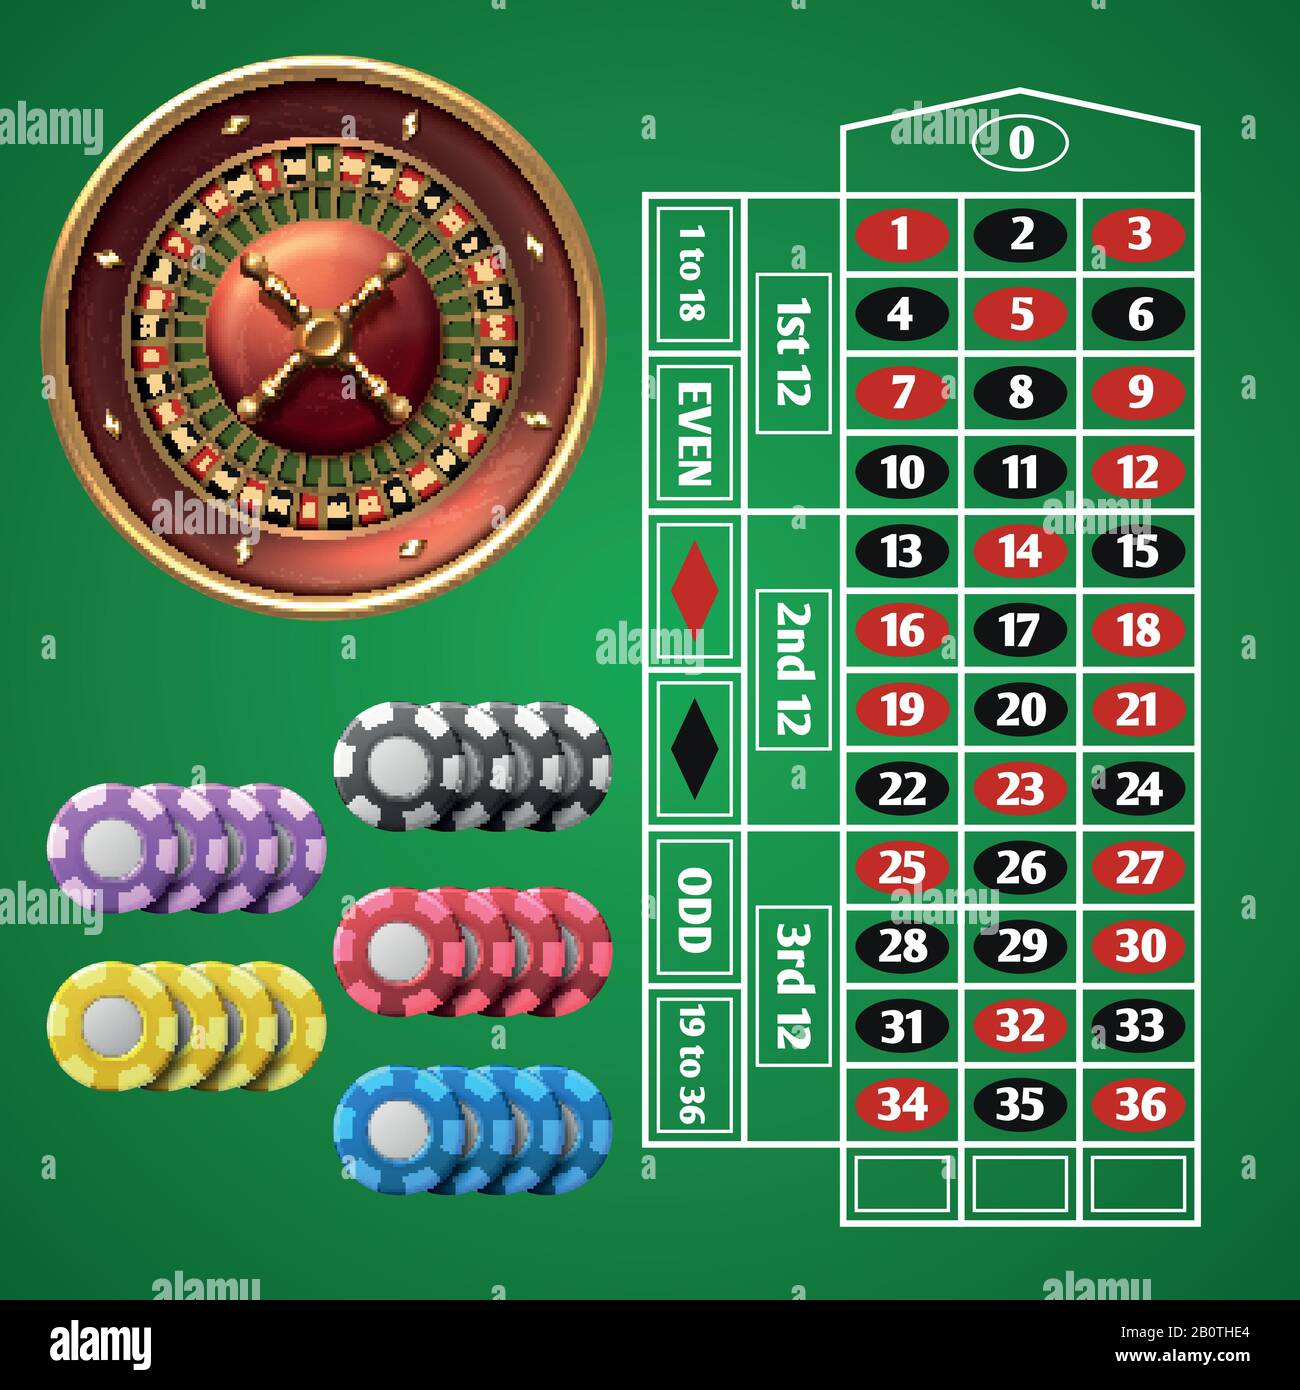 Juegos de Casino de Ruleta en Español